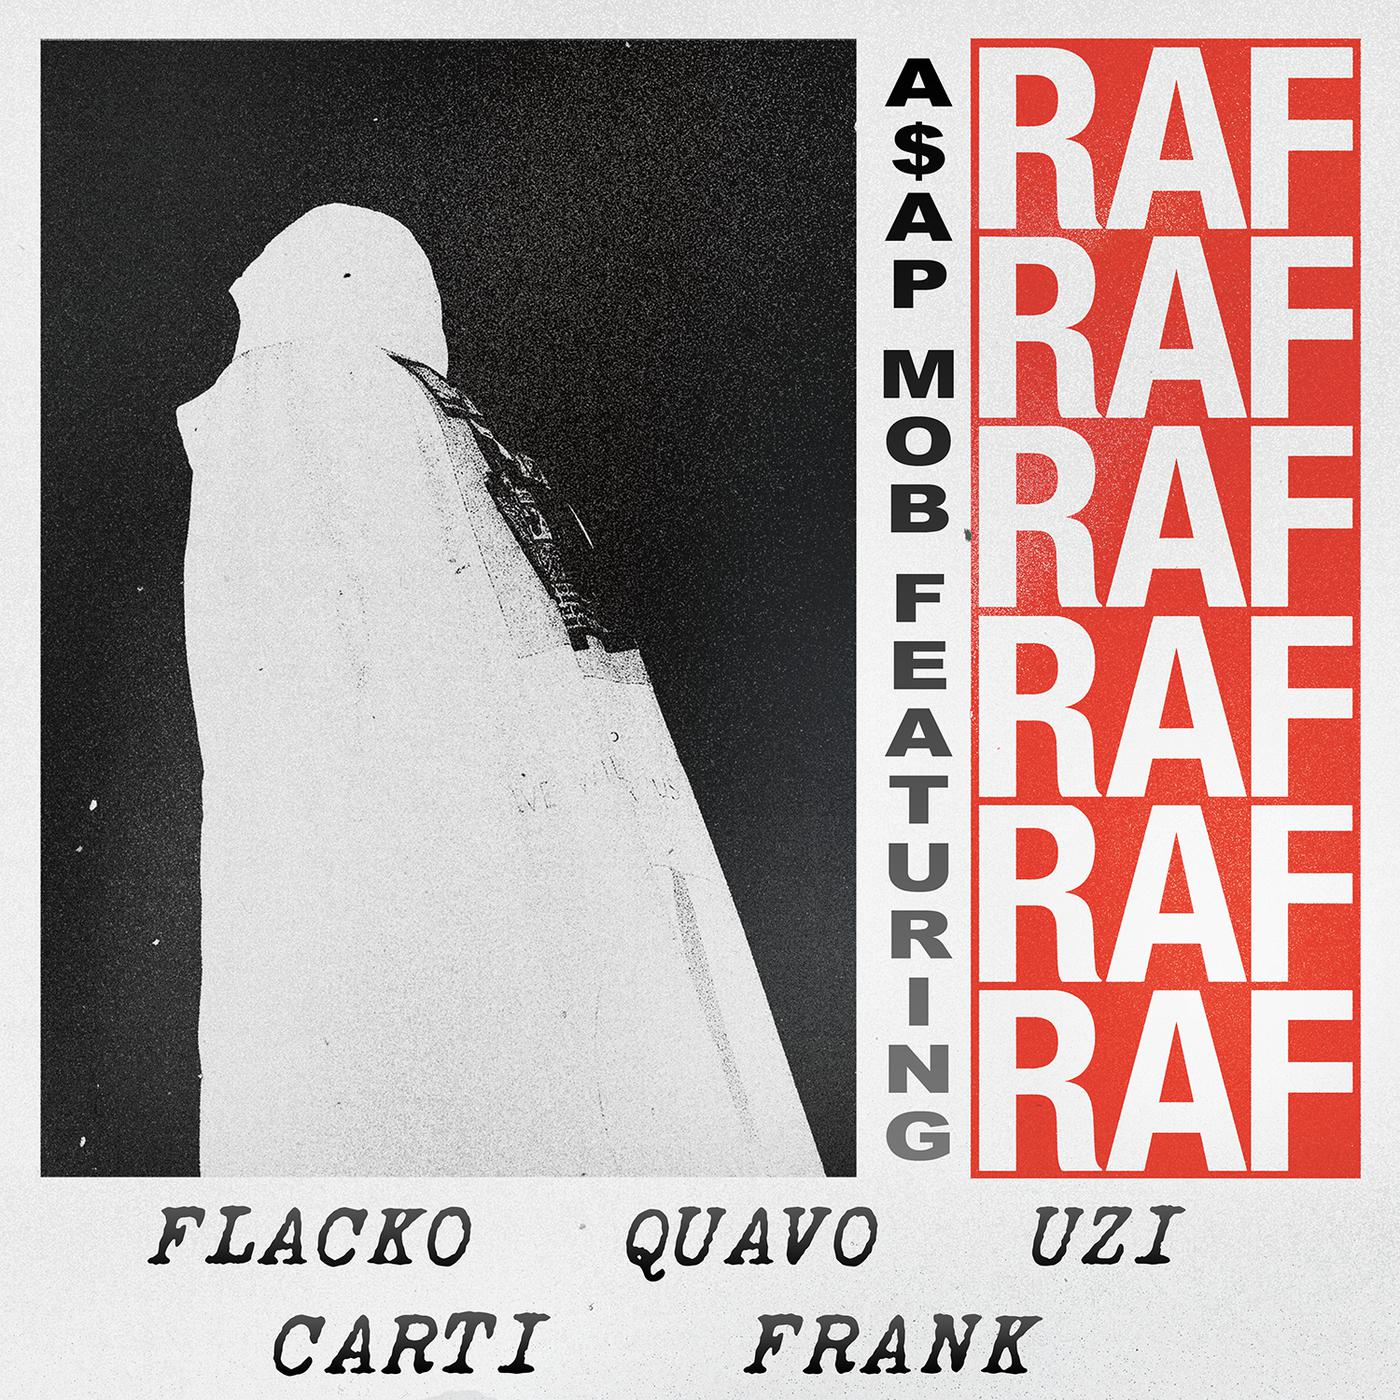 RAF歌词 歌手A$AP Mob / A$AP Rocky / Playboi Carti / Quavo / Lil Uzi Vert / Frank Ocean-专辑RAF-单曲《RAF》LRC歌词下载